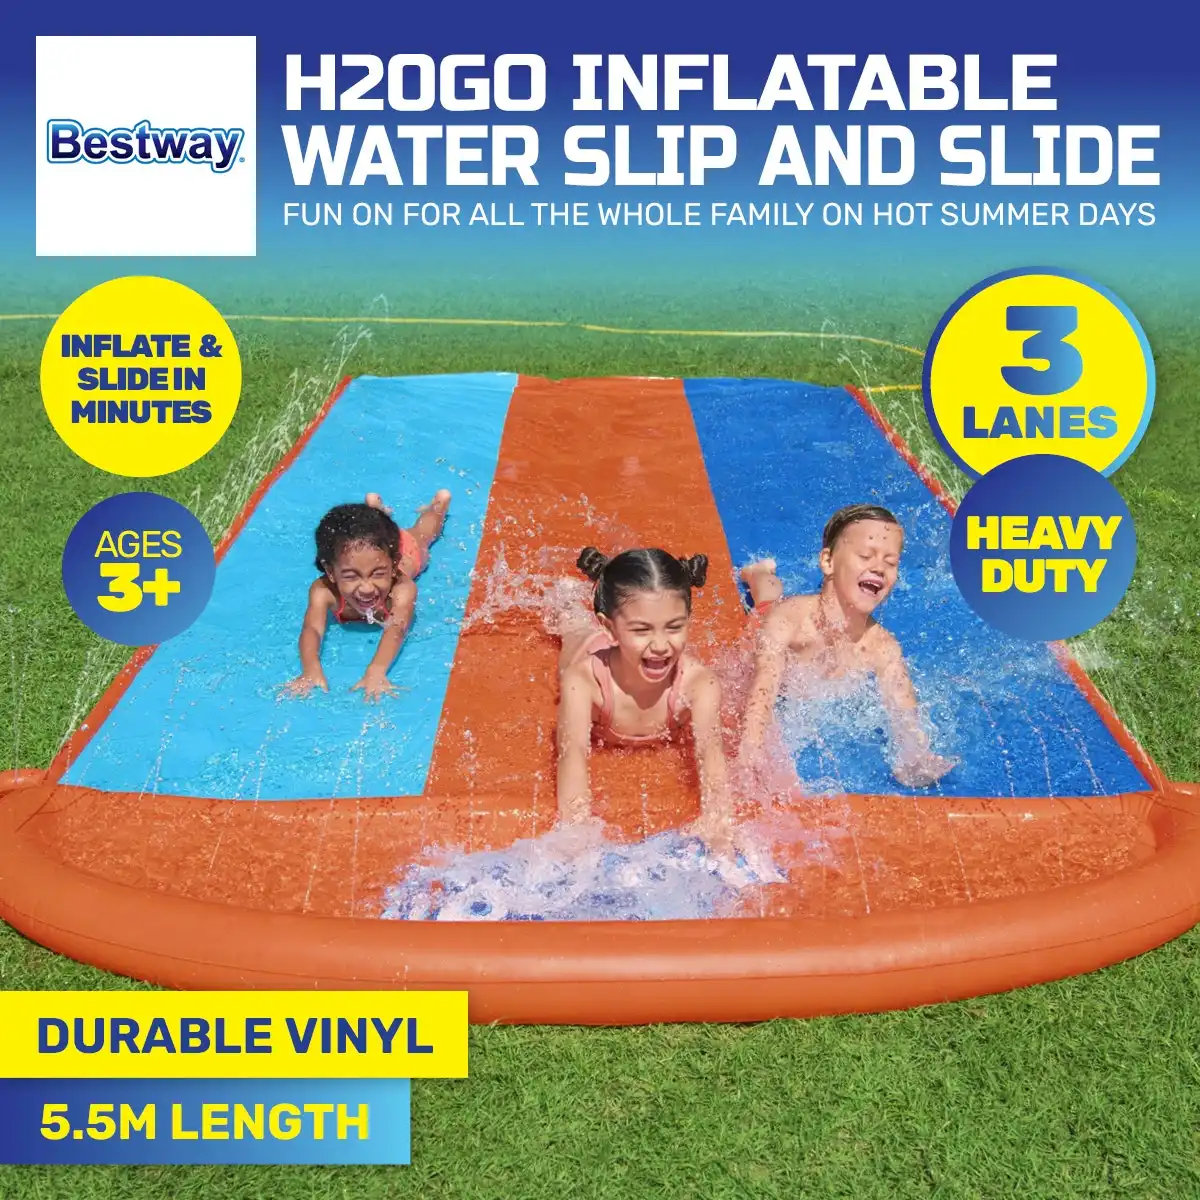 Bestway® 4.8m Triple Lane Inflatable Water Slide Built-In Water Jets